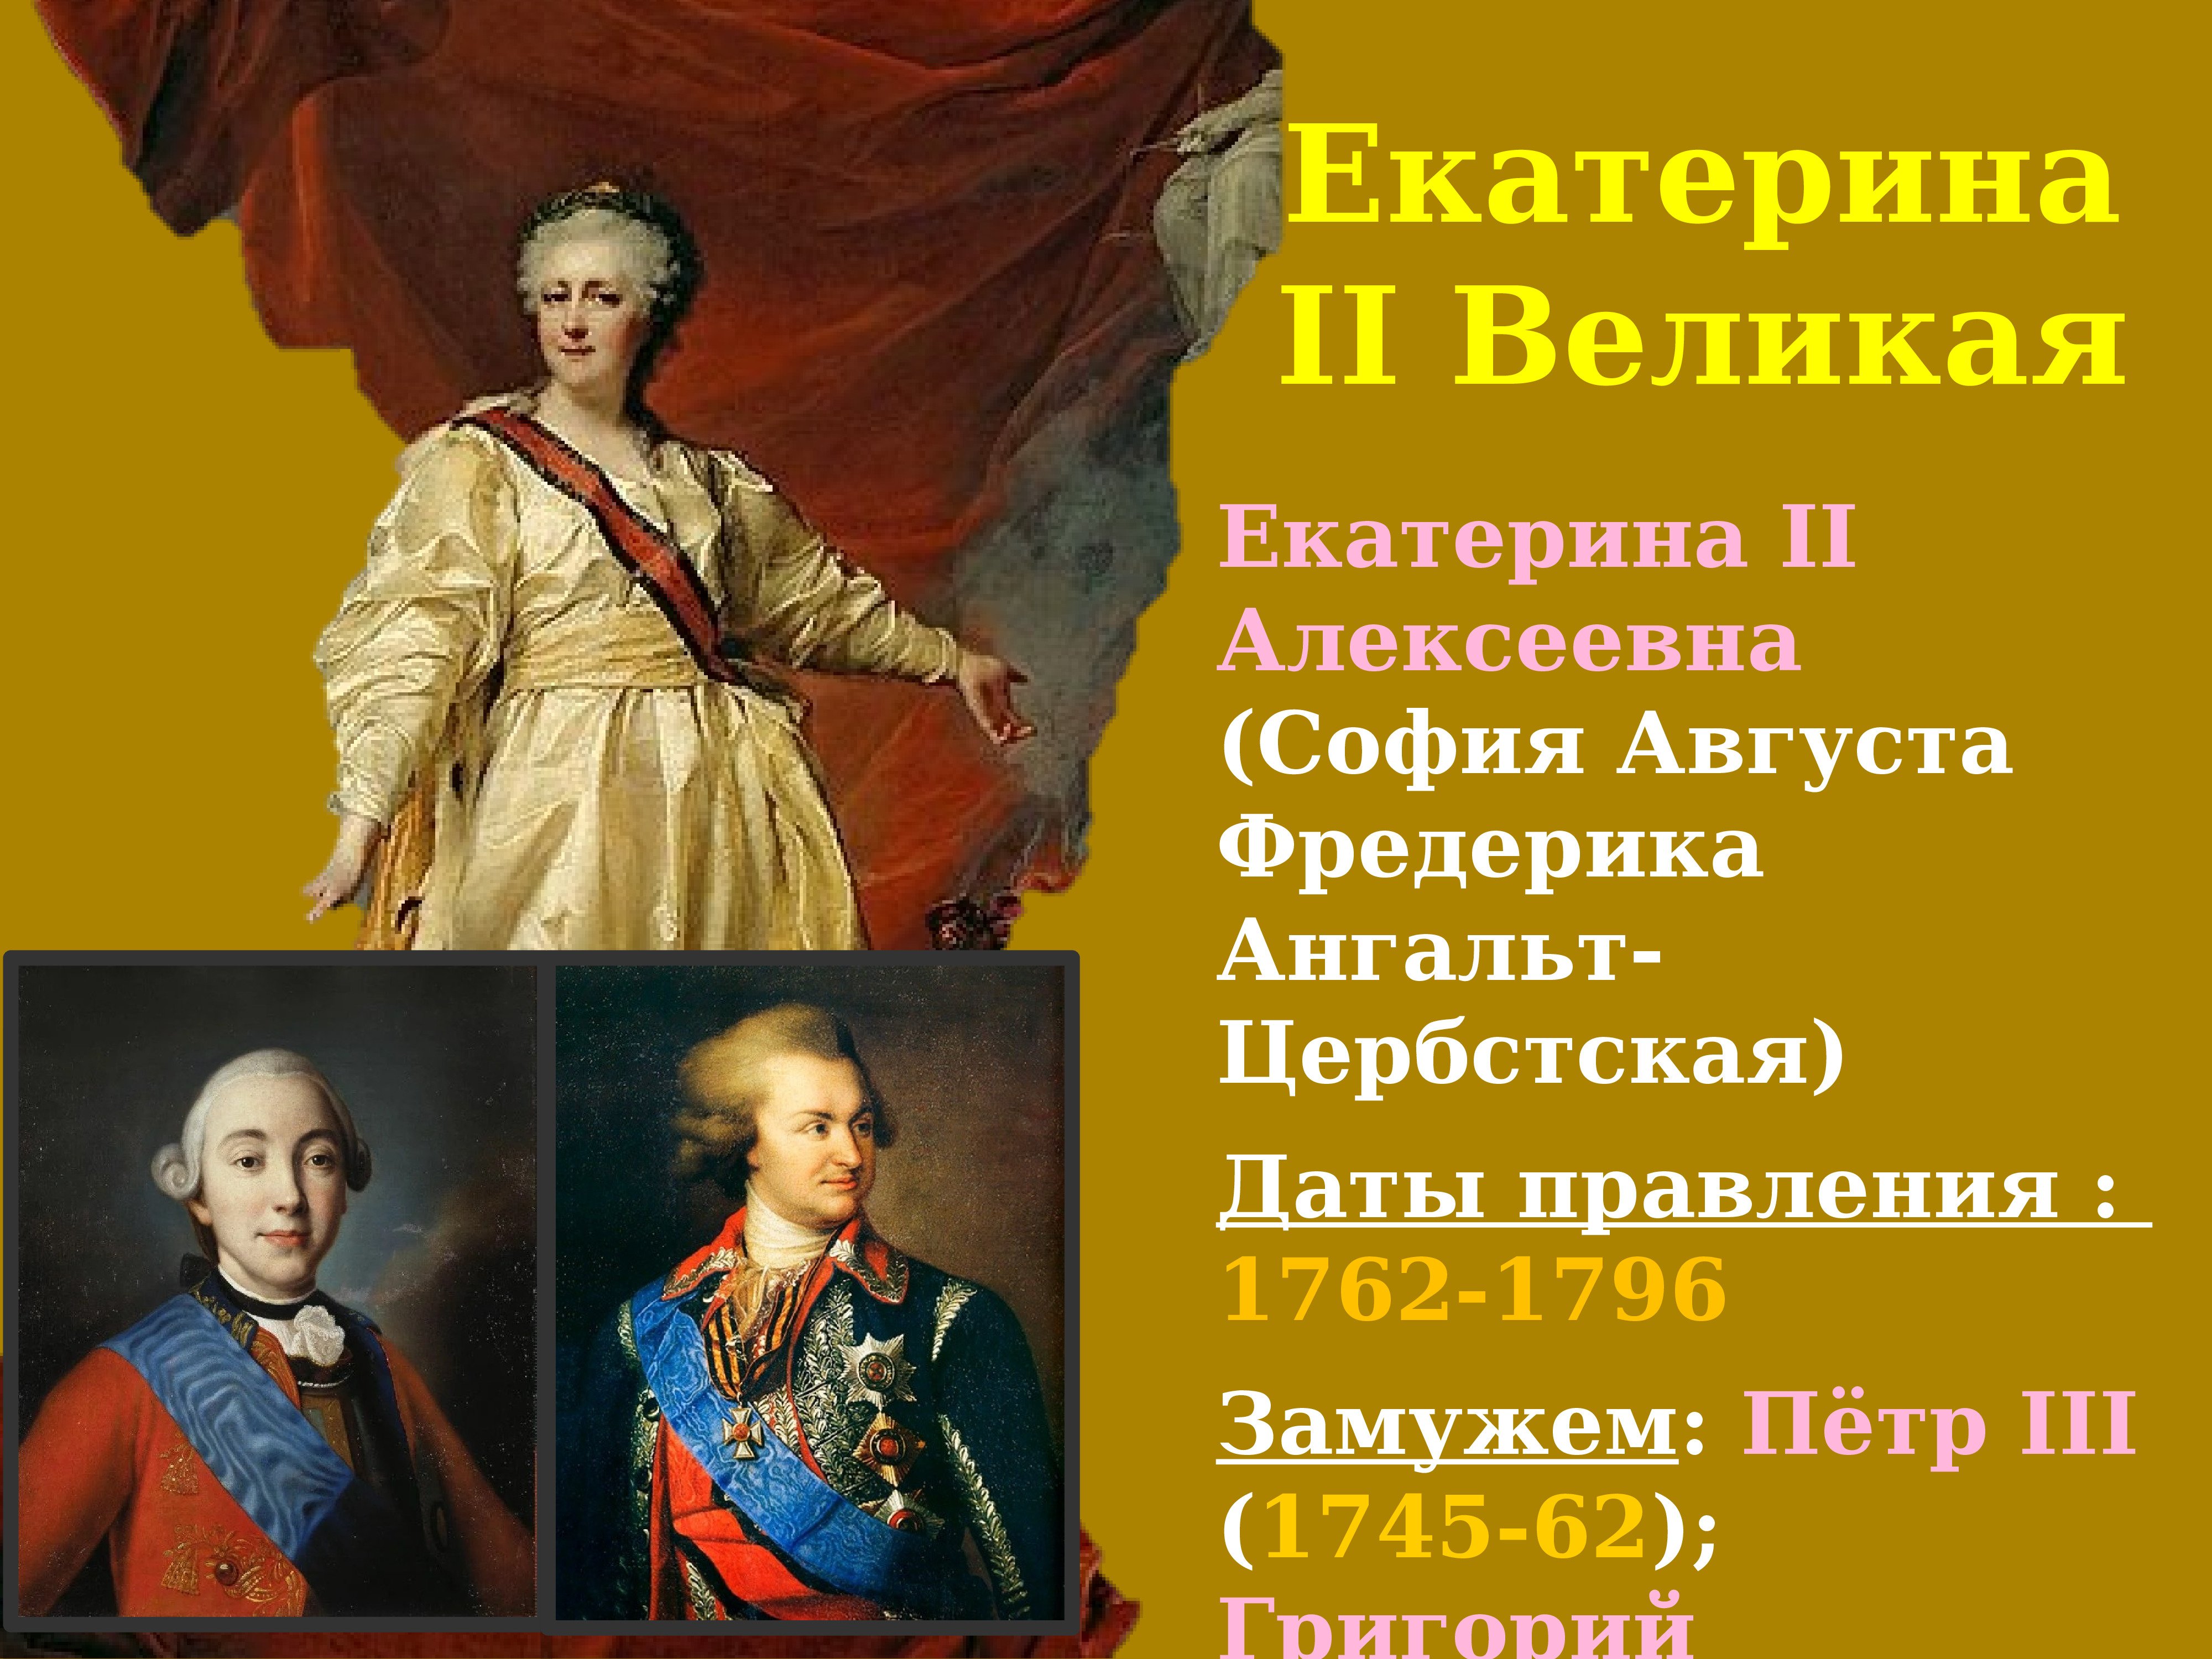 Достижения екатерины великой. Правитель 1762-1796. Правление Екатерины 2 1762-1796.